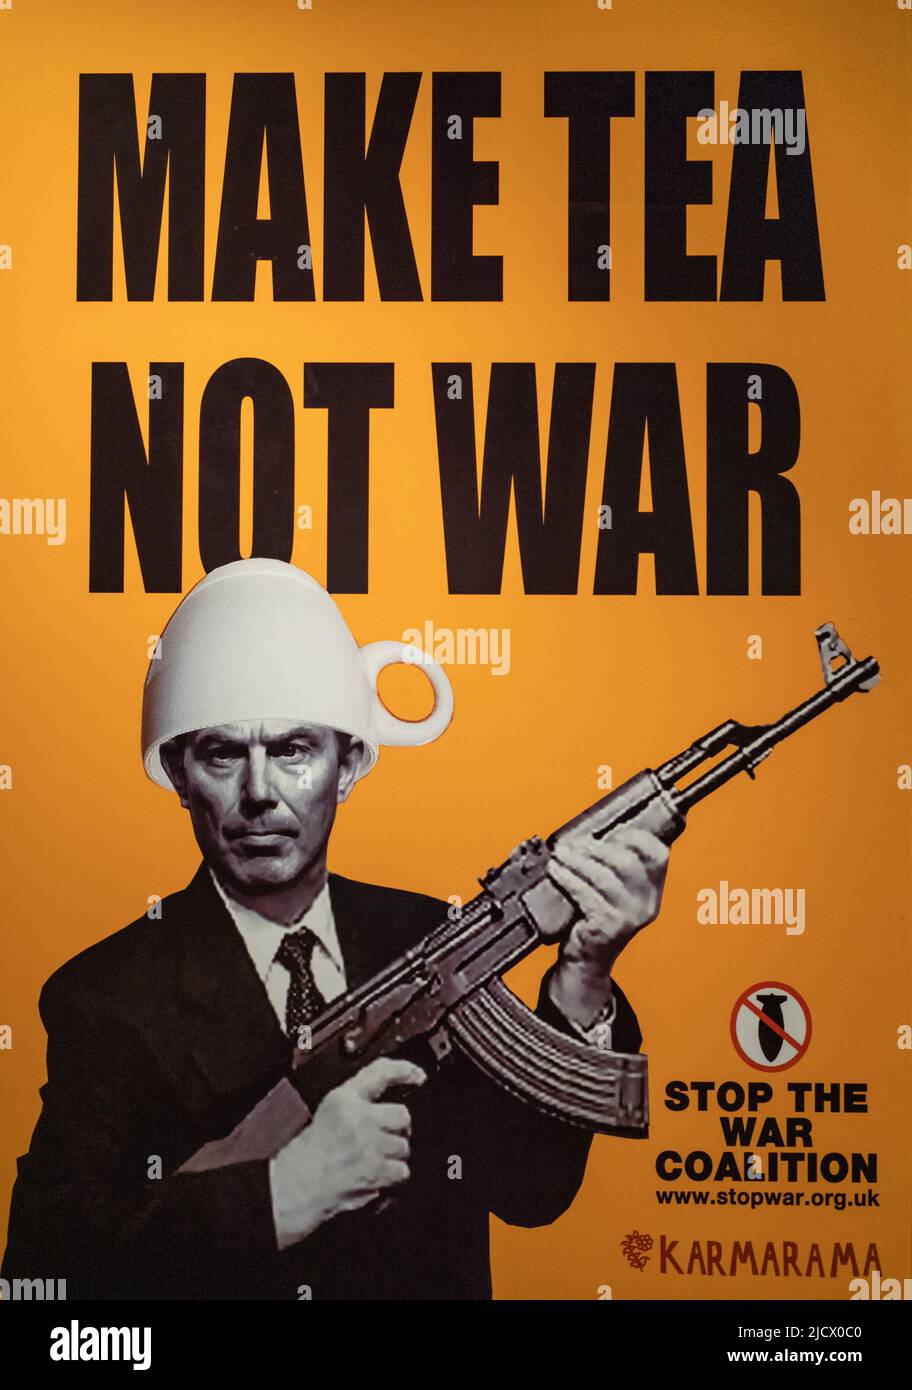 Une affiche de protestation contre la guerre d'Irak en 2003 exposée au Musée impérial de la guerre (IWM) à Londres. Banque D'Images